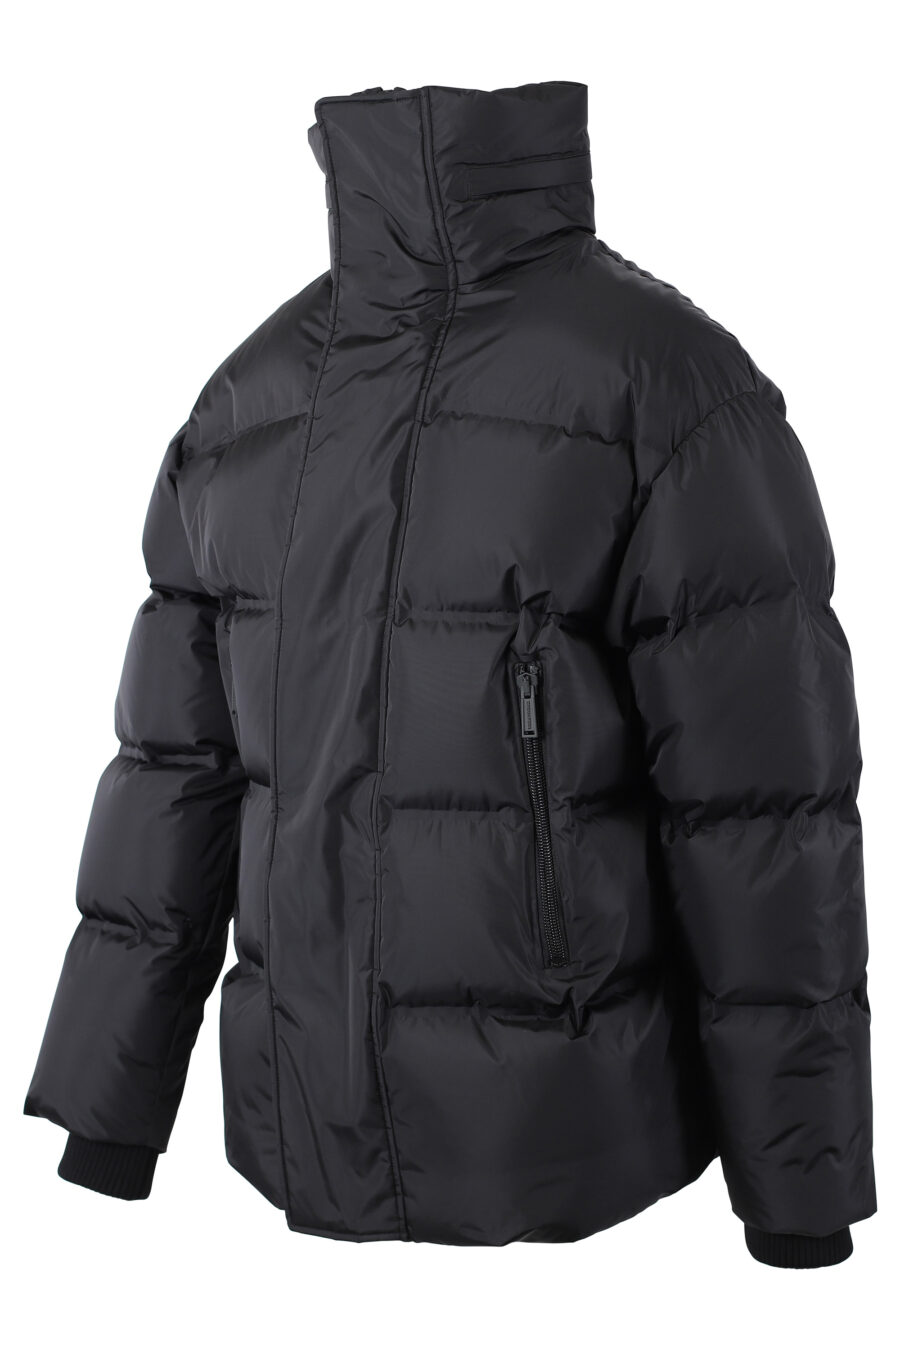 Black jacket with "dsq2" maxilogo on velcro - IMG 1098